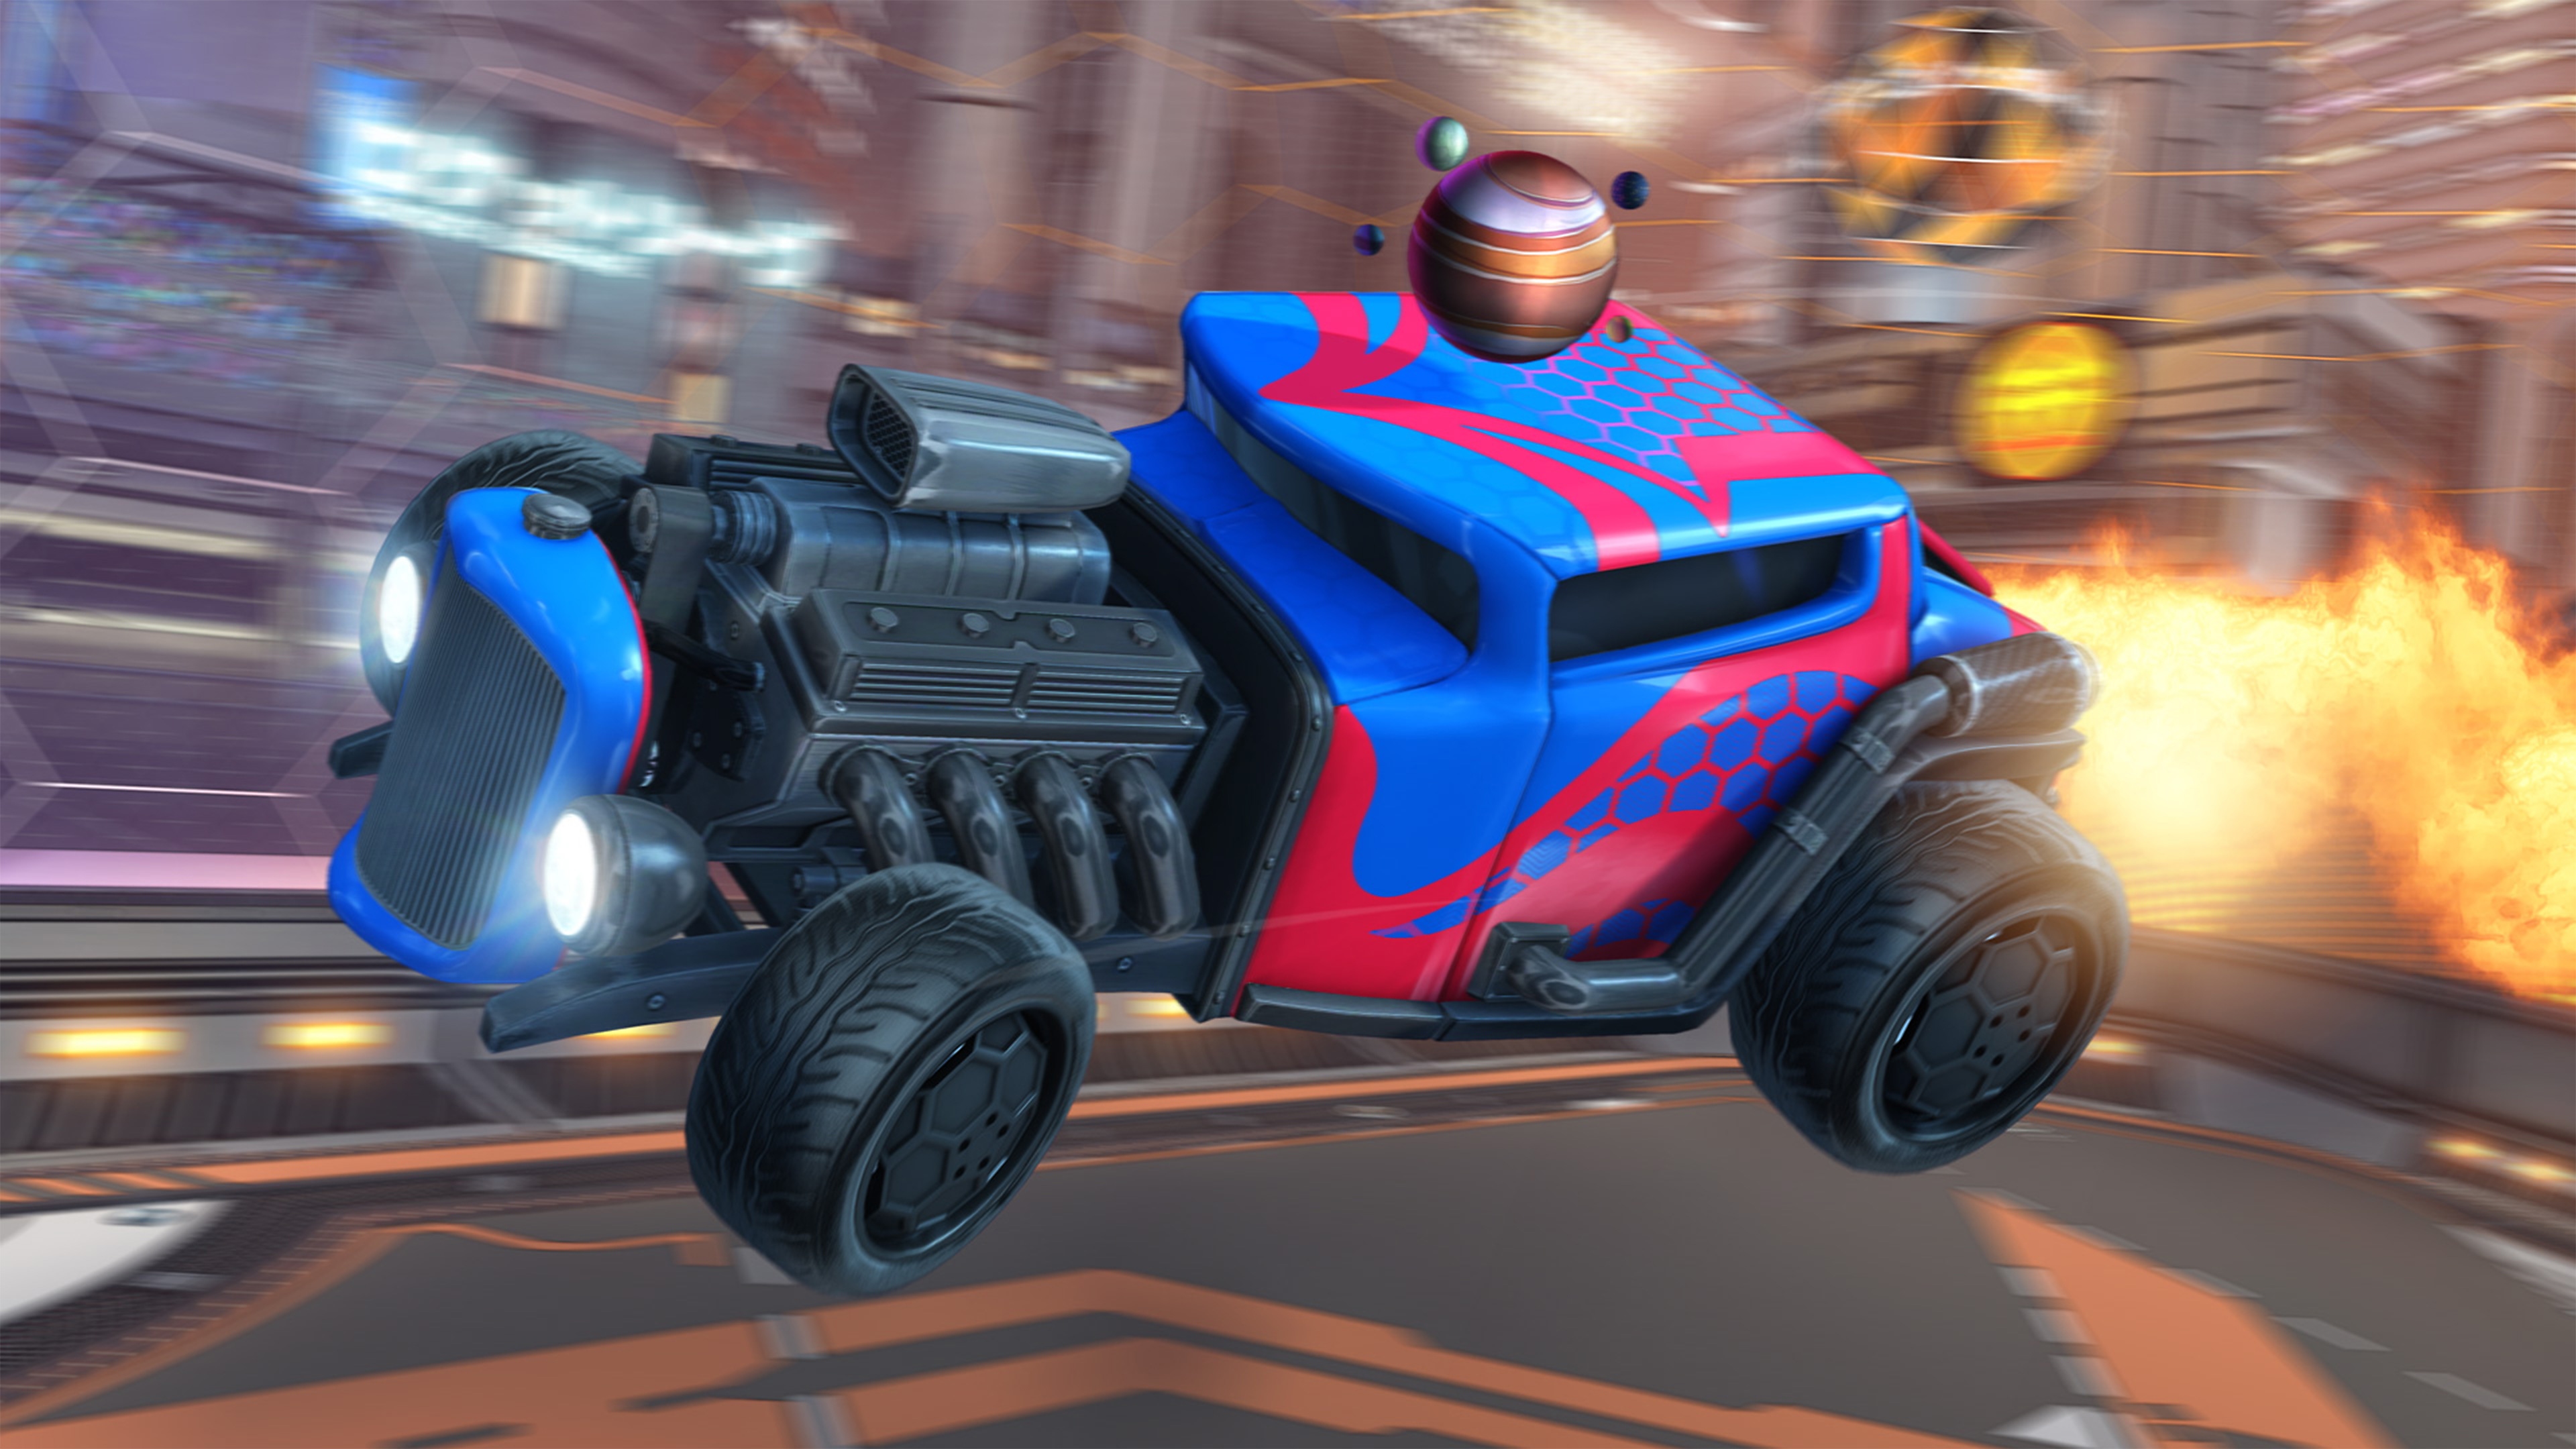 Capture d'écran de Rocket League montrant une voiture rouge et bleue de type hot rod au moteur visible